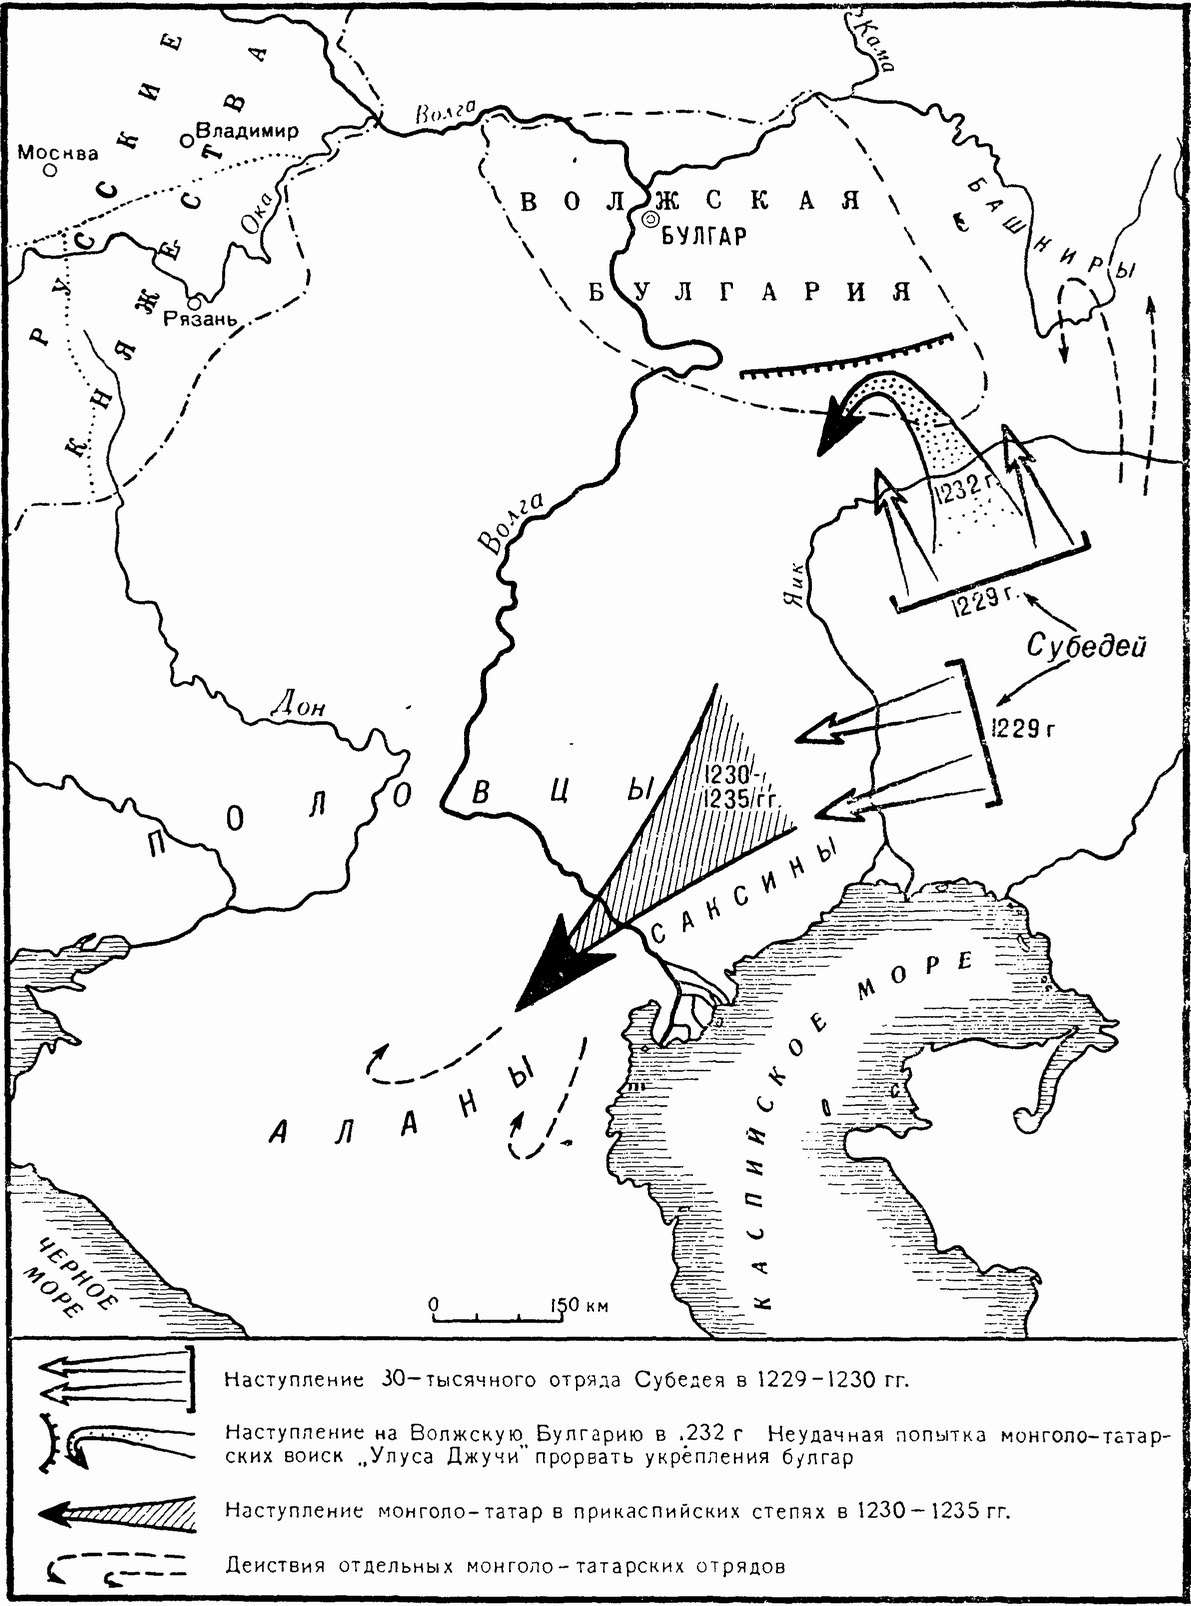 Вторжение монголо-татар в Юго-Восточную Европу (1223—1235 гг.)